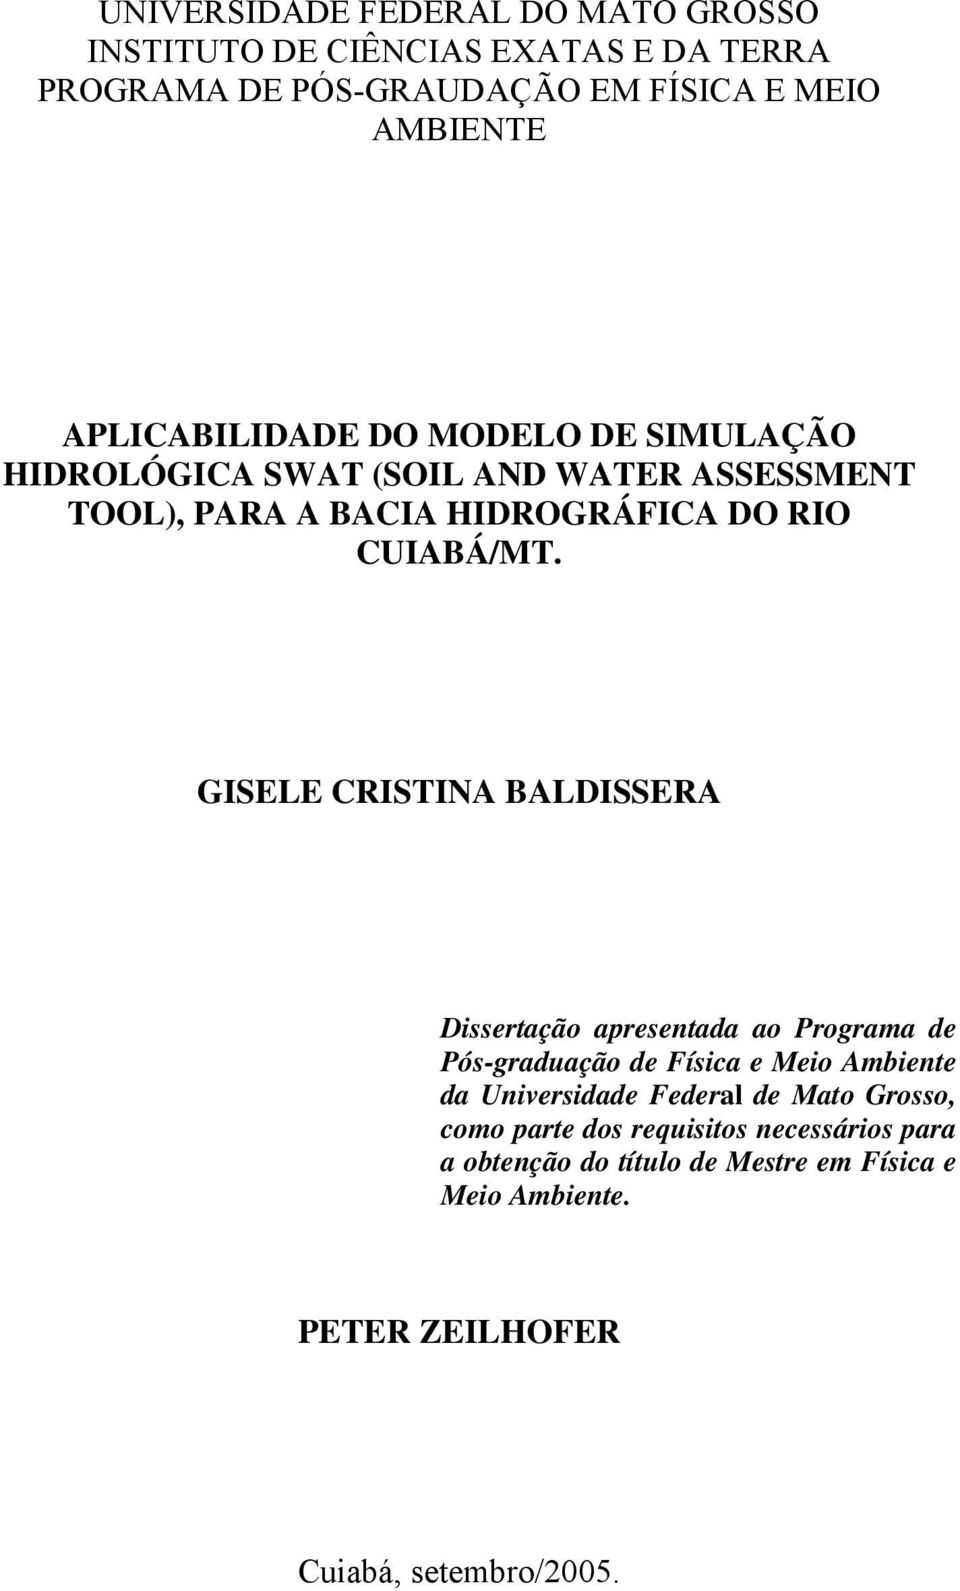 GISELE CRISTINA BALDISSERA Dissertação apresentada ao Programa de Pós-graduação de Física e Meio Ambiente da Universidade Federal de